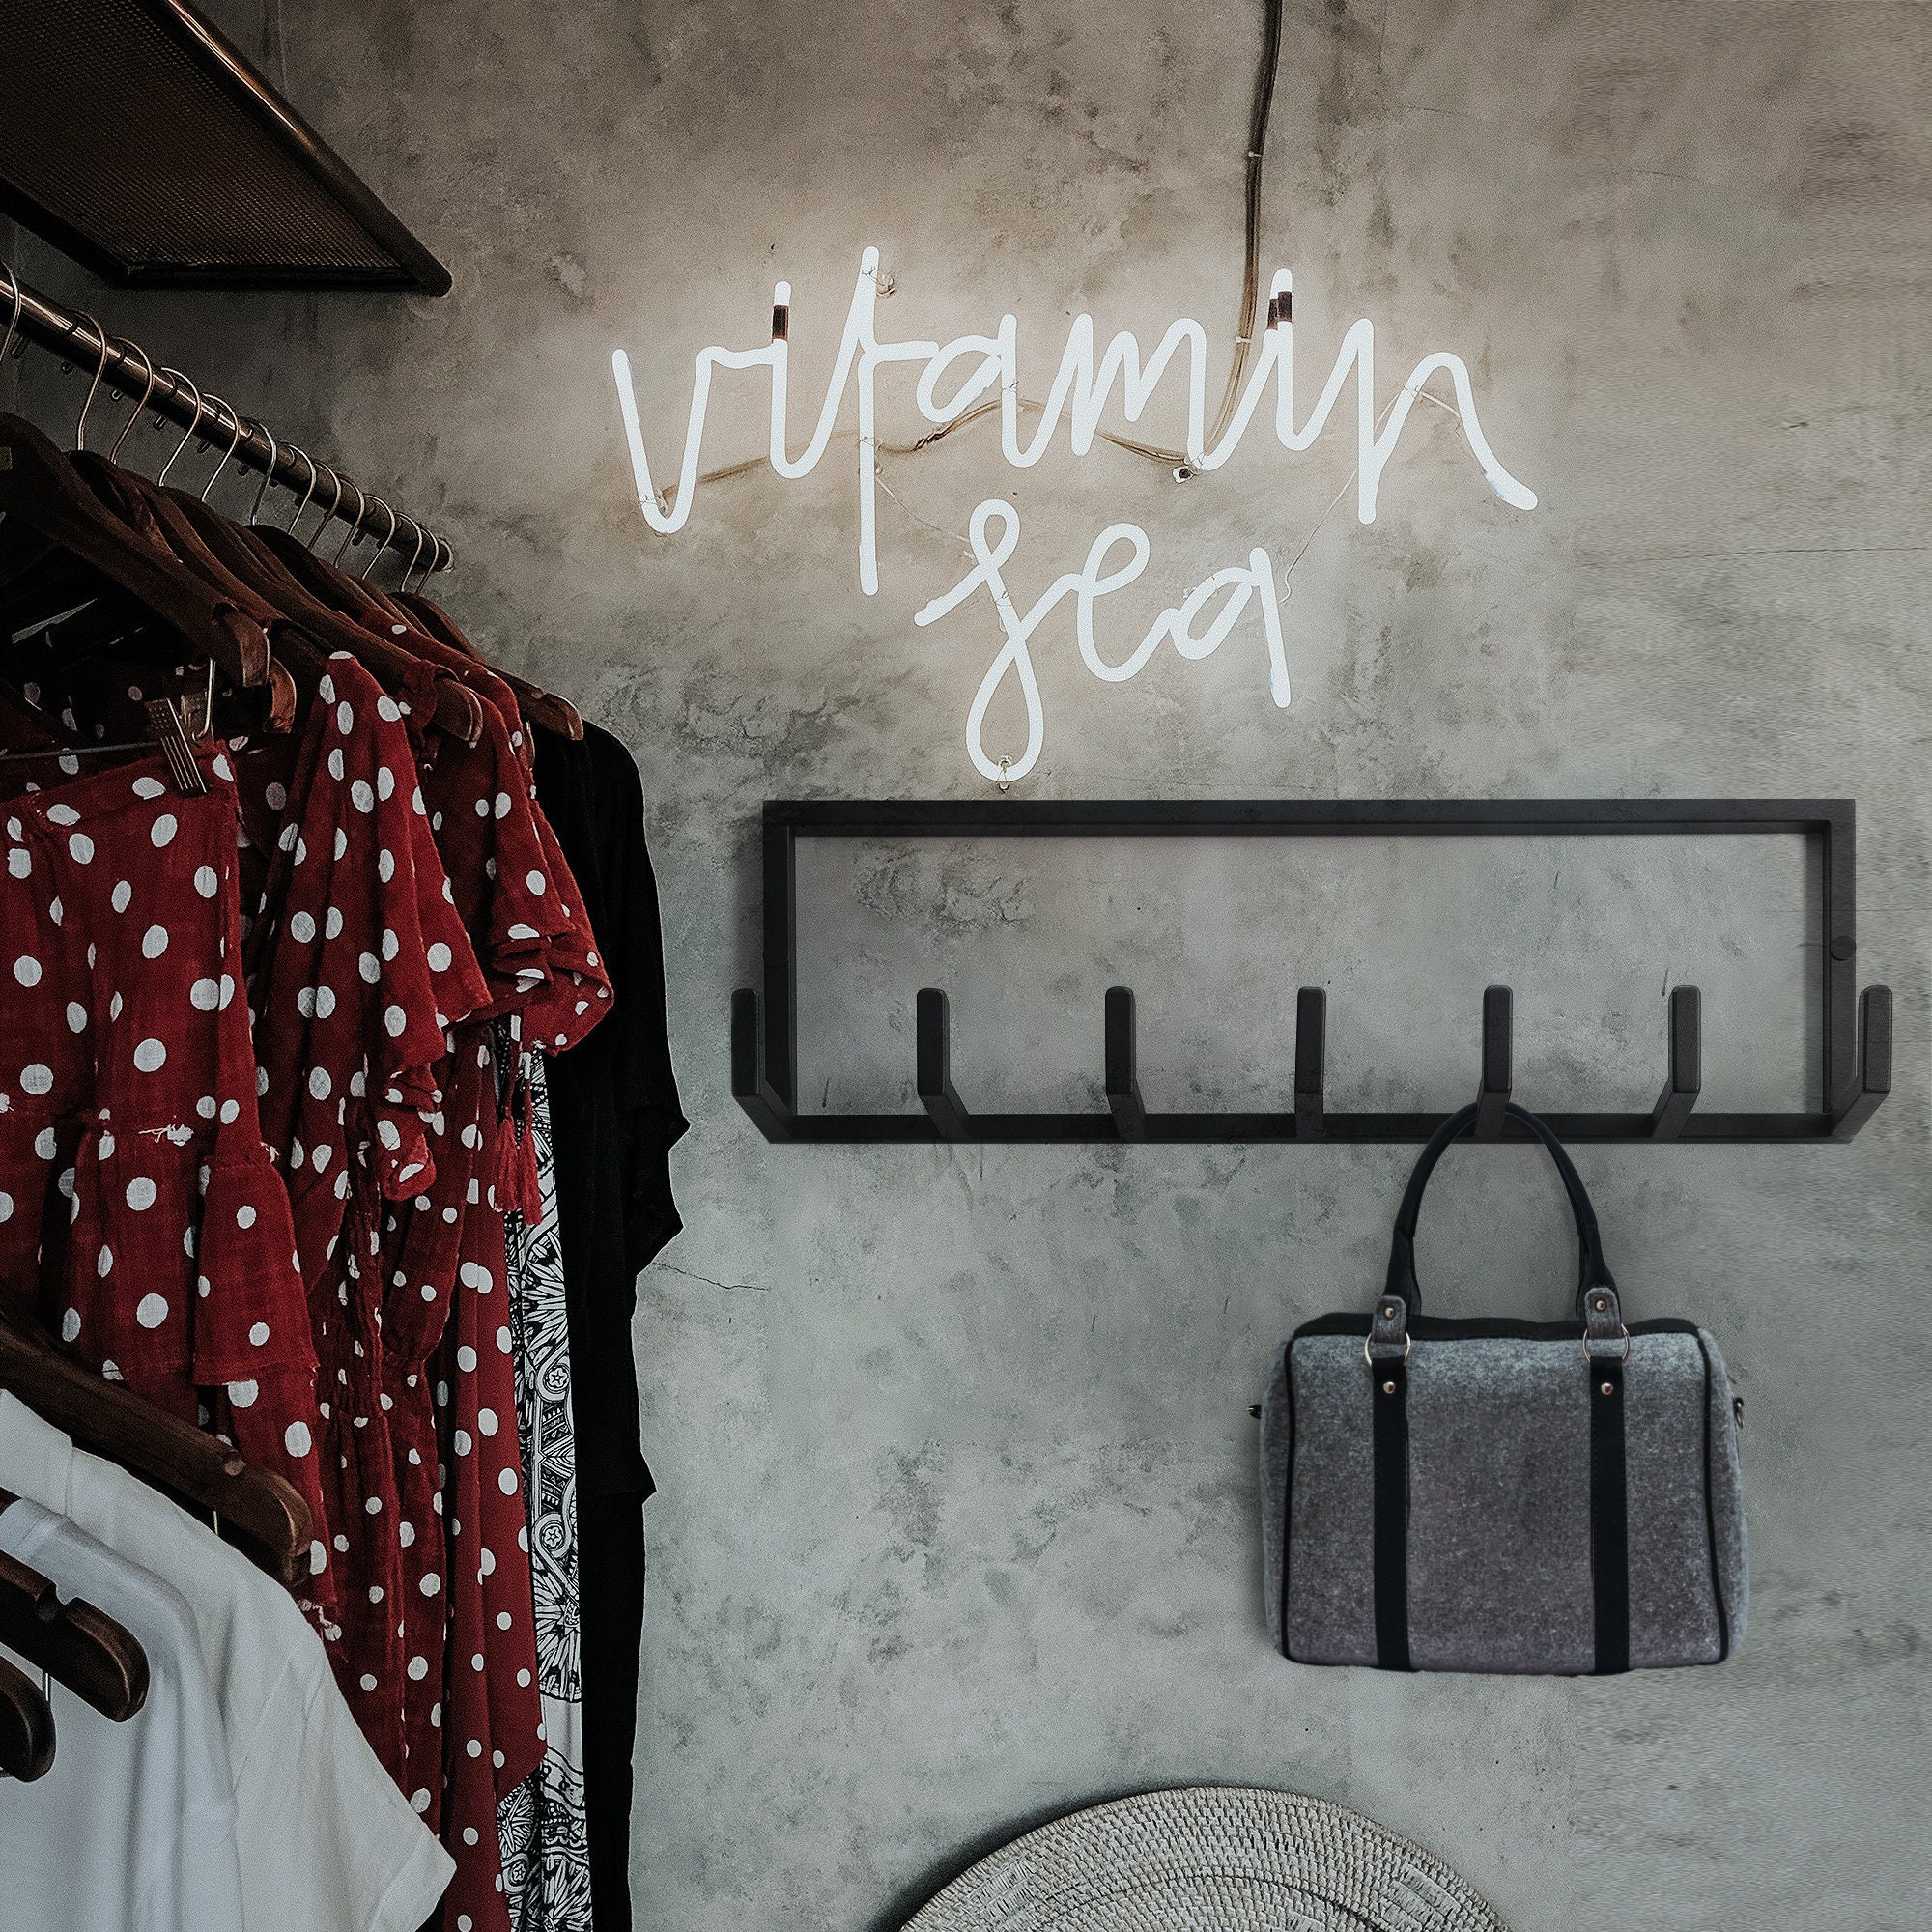 Comfify Perchero decorativo de pared de hierro fundido – Percha de diseño  vintage con 4 ganchos – para abrigos, sombreros, llaves, toallas, ropa